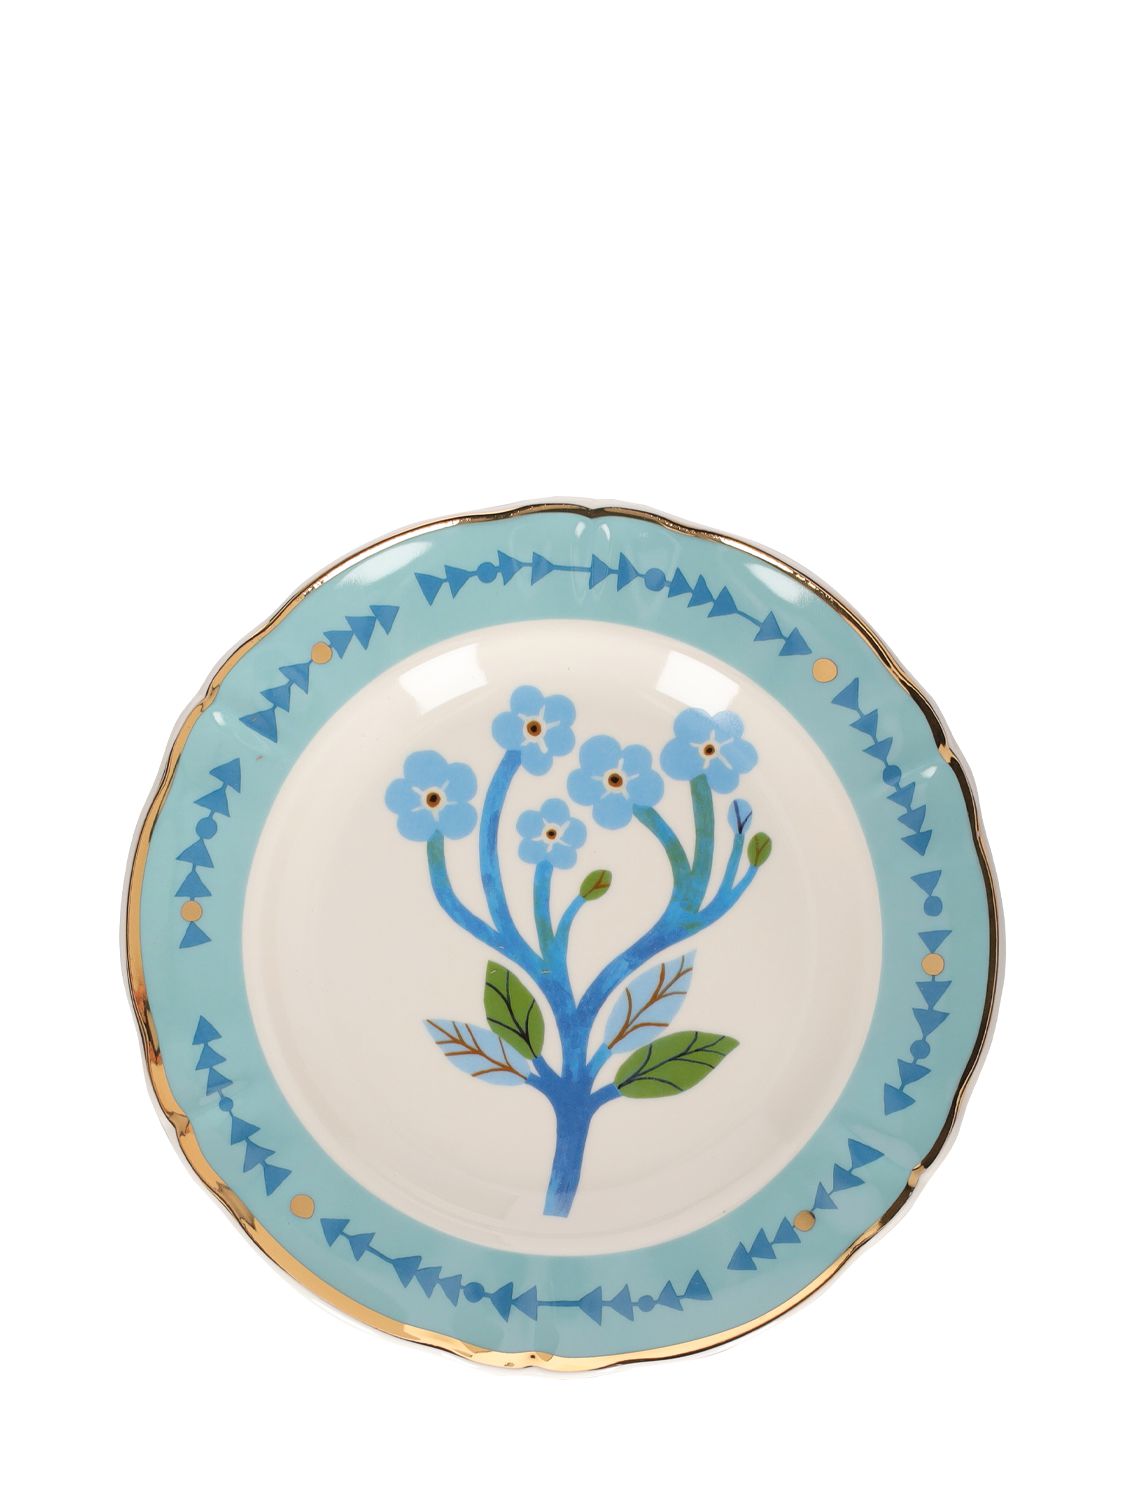 Bitossi Home Botanica Dessert Plate In Blue